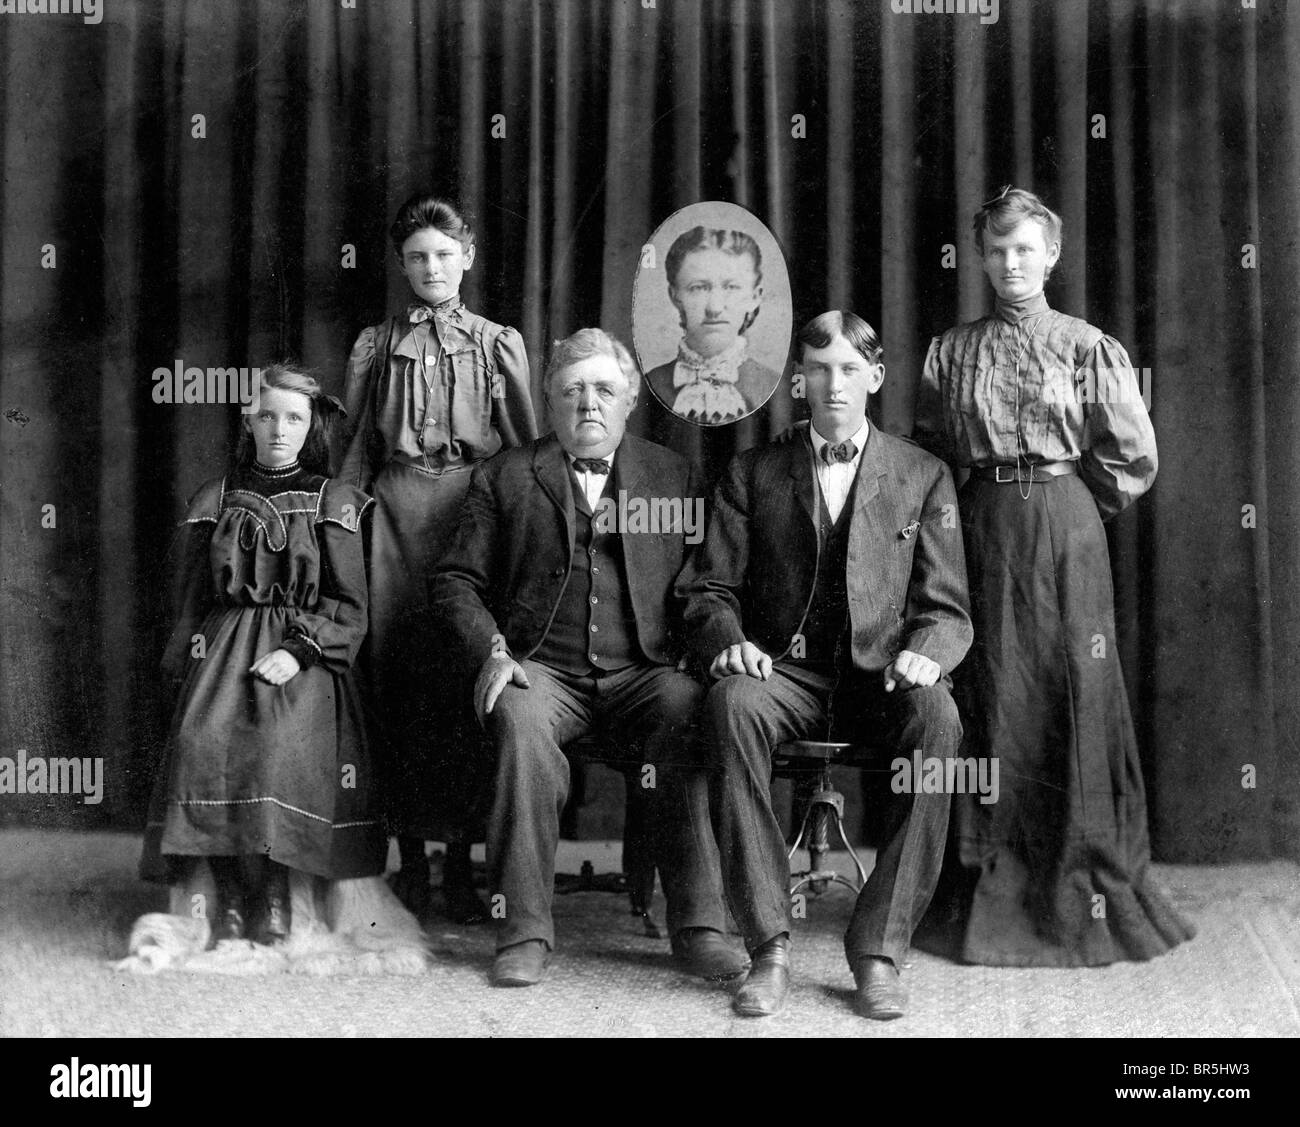 Photographie historique, la famille, le défunt représenté par une photo, vers 1922 Banque D'Images